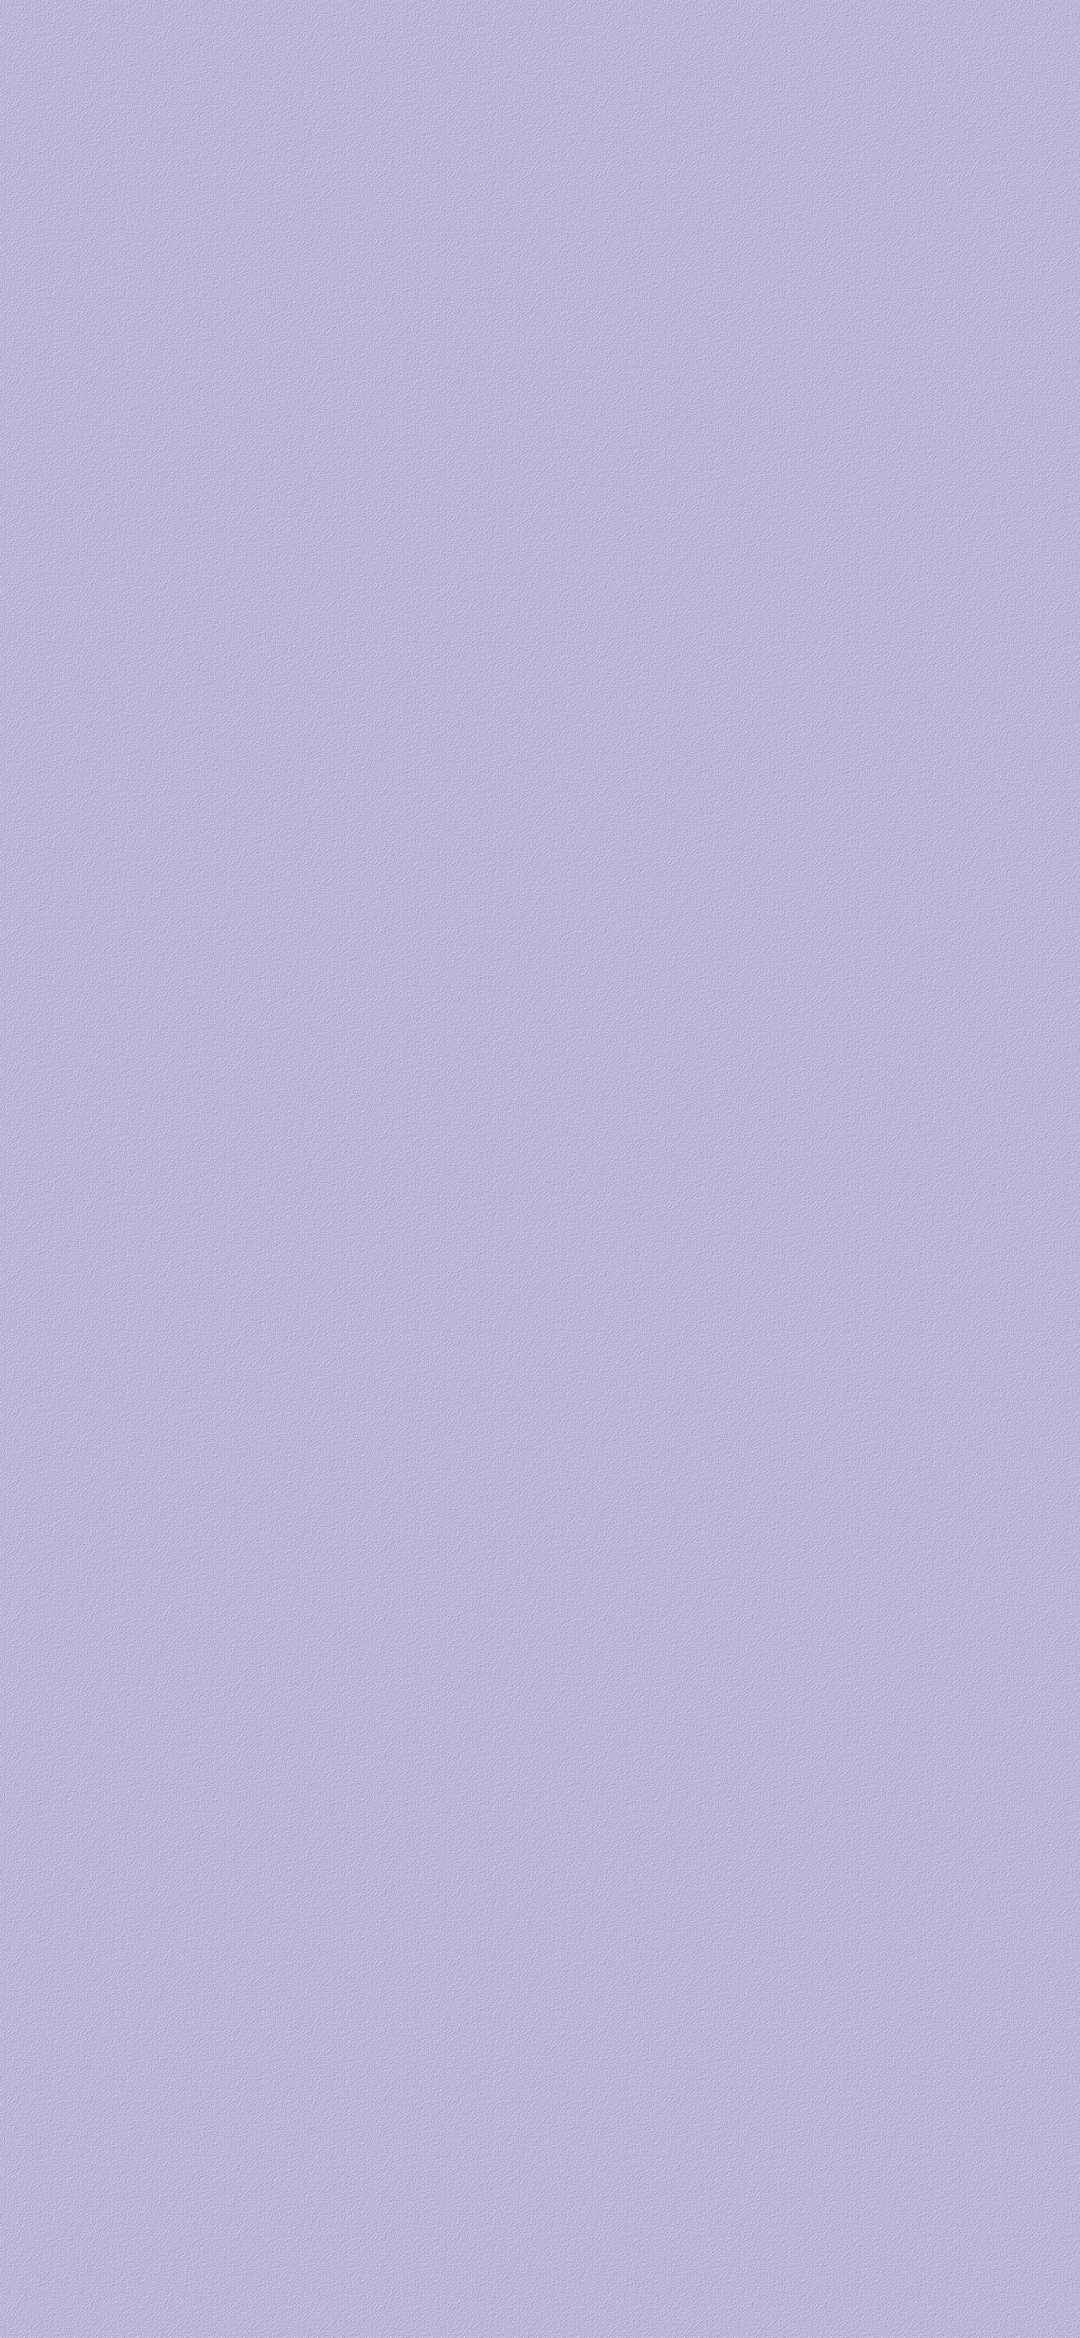 浅紫色纯色磨砂超清壁纸